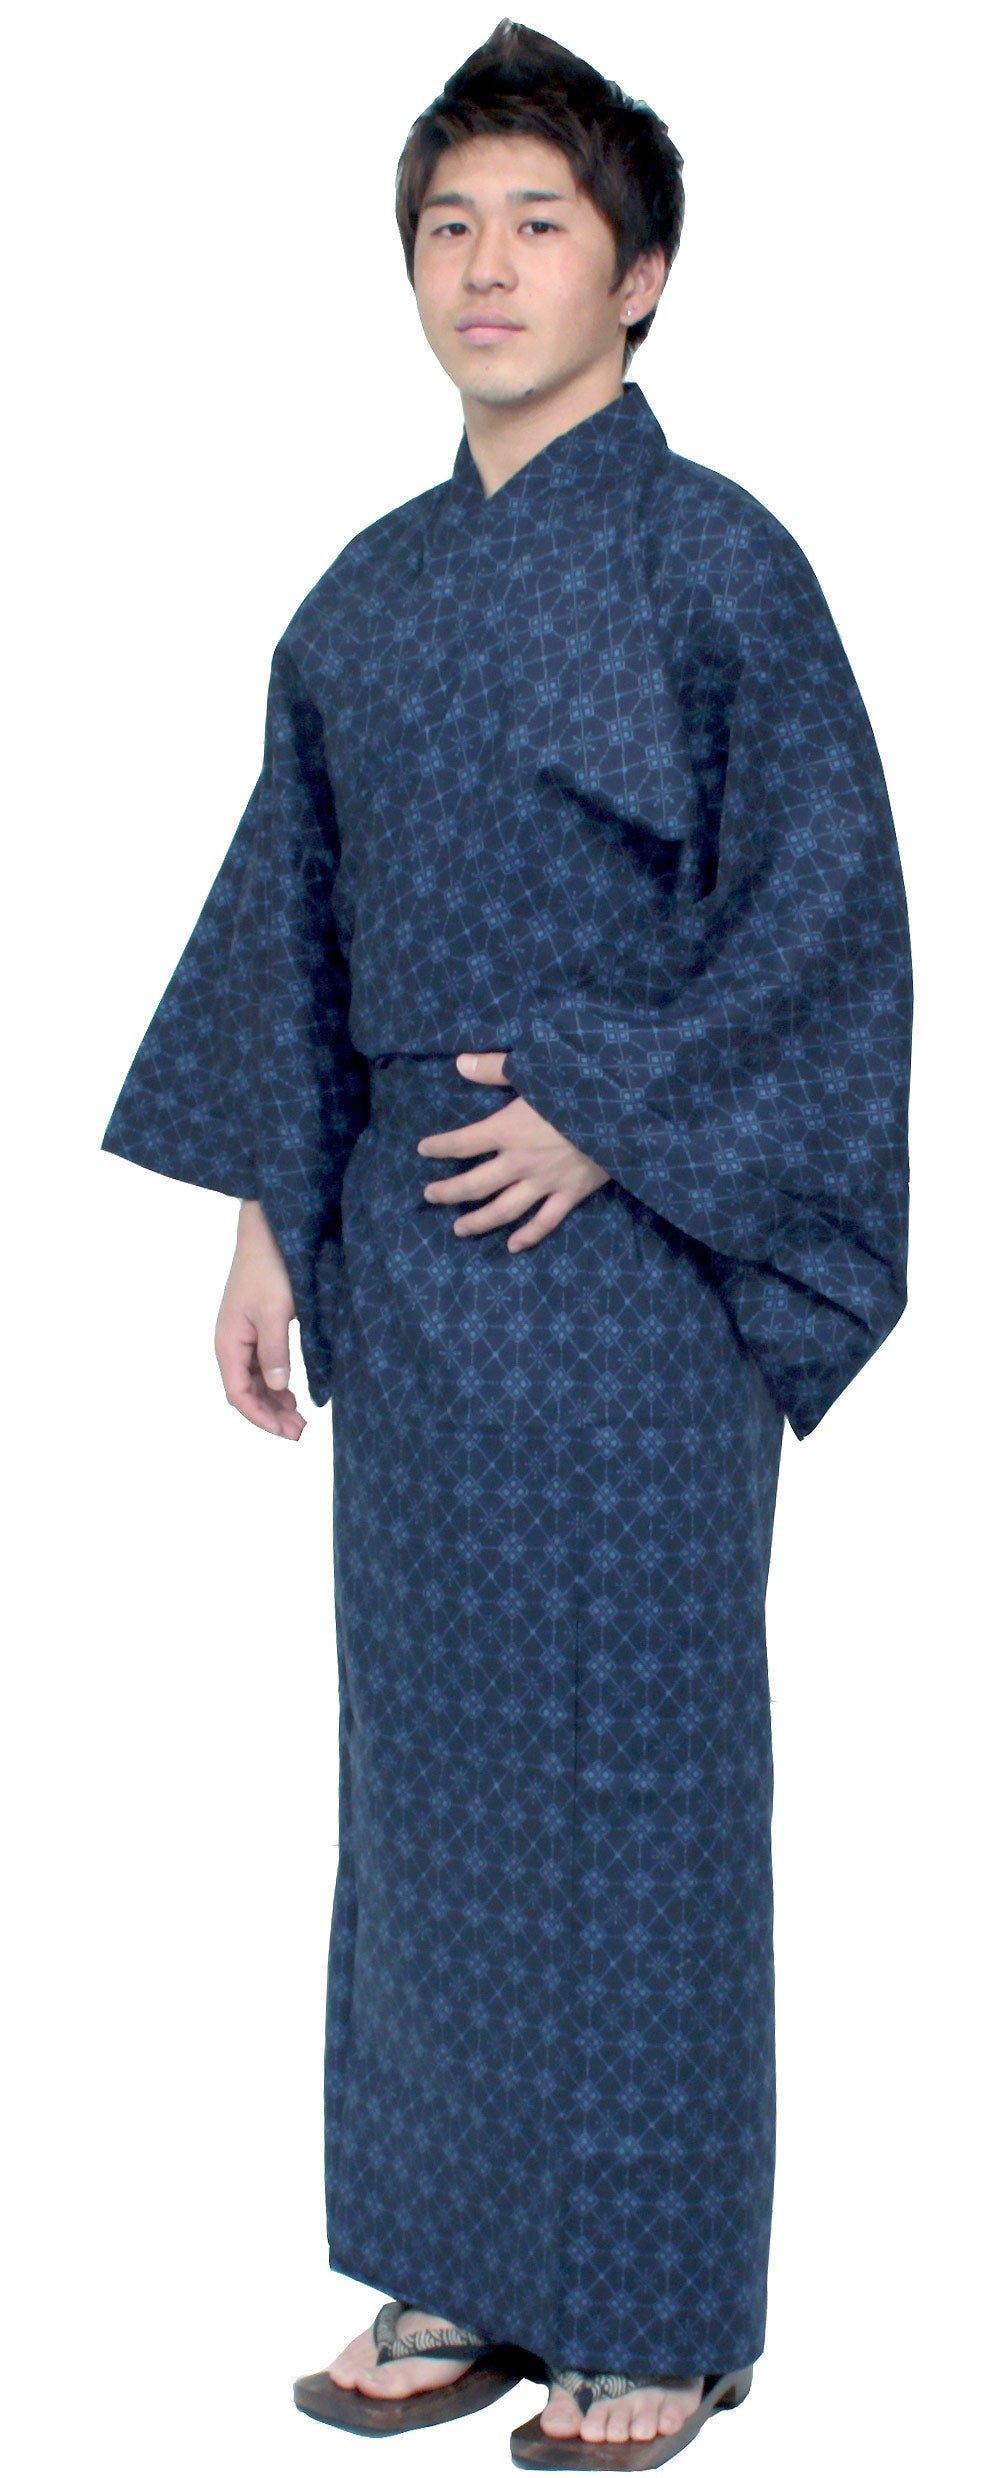 Men's Easy Yukata / Kimono Robe : Japanese Traditional Clothes - Robe Argyle Navy